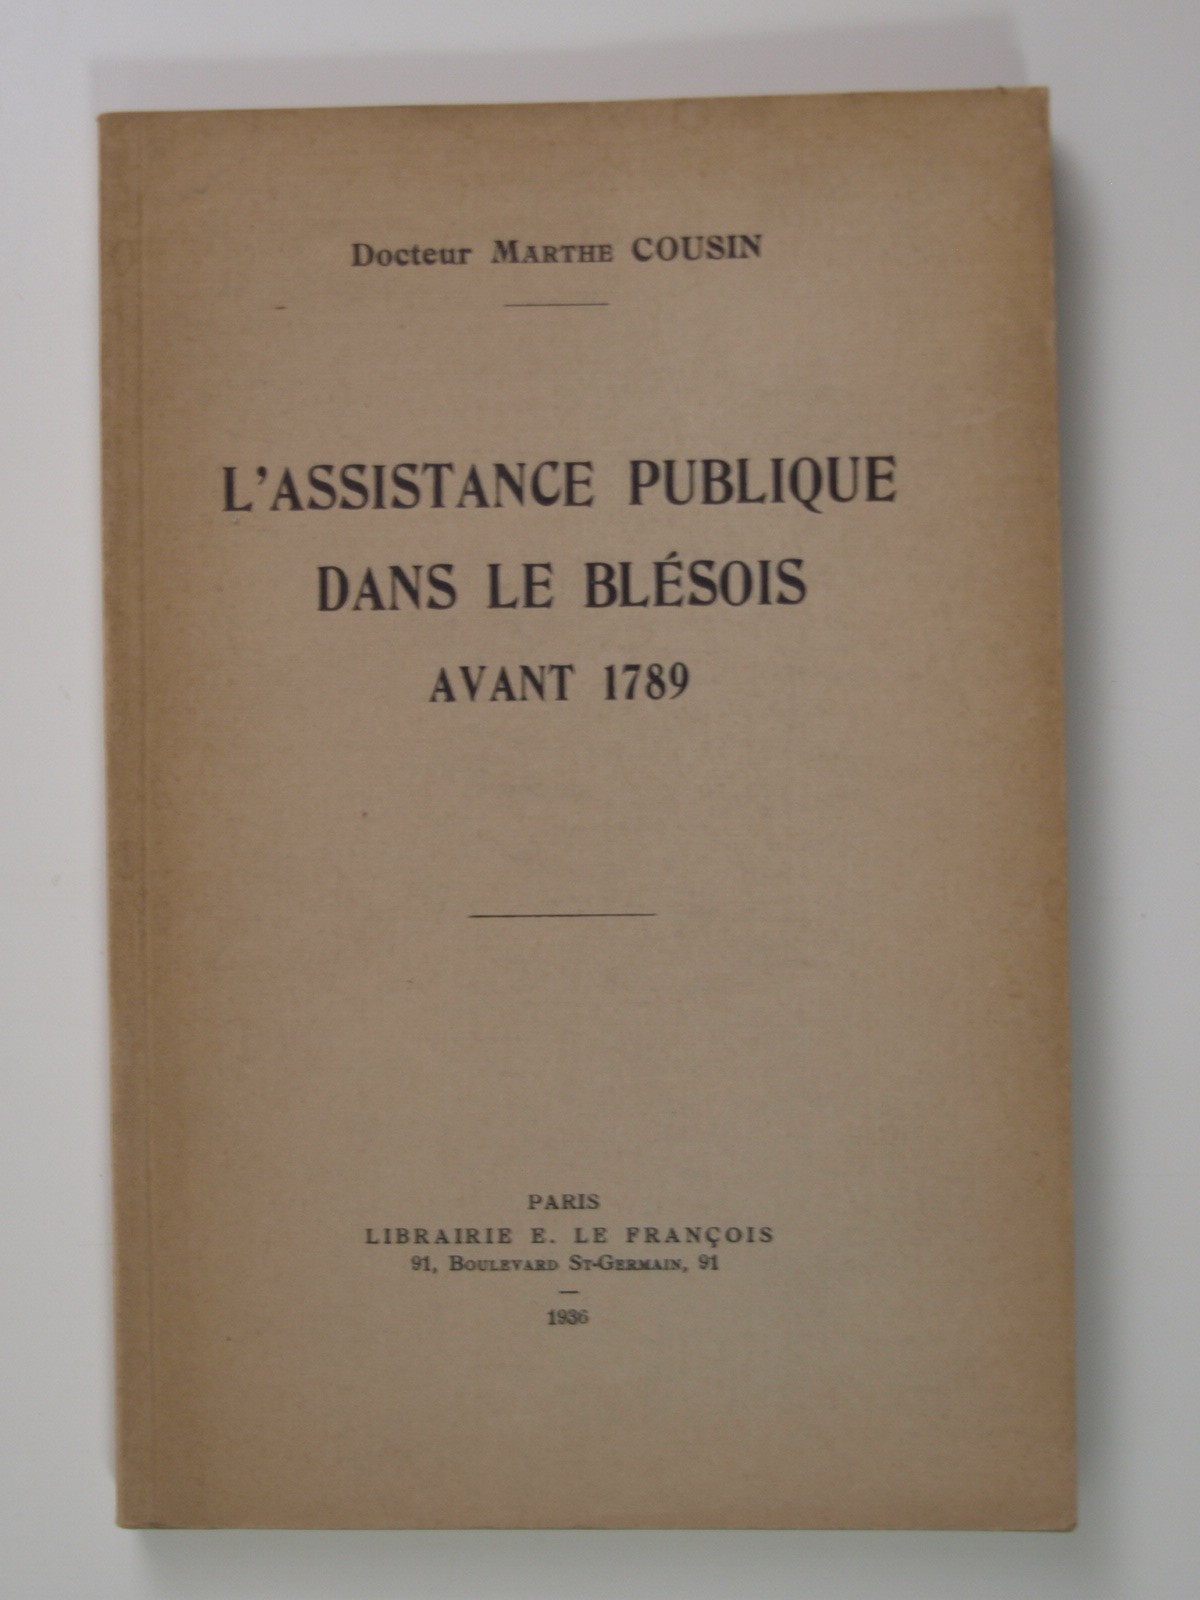 Cousin Marthe (docteur) : L' Assistance publique dans le Blésois avant 1789